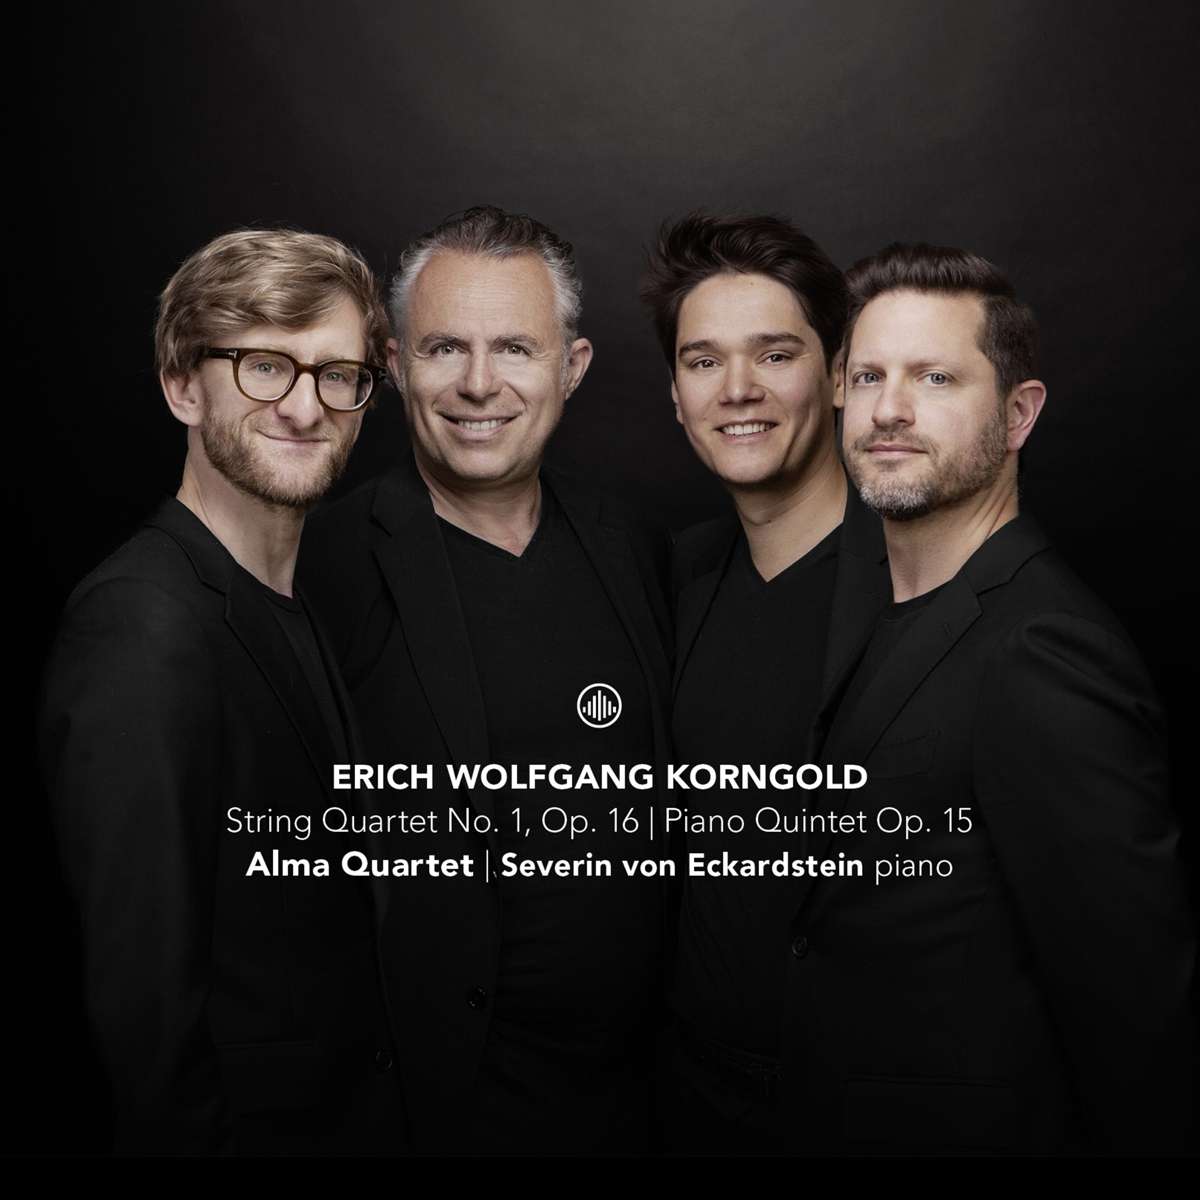 Alma Quartet / Severin von Eckardstein - Akl23 / Korngold: String Quartet No. 1, Op. 16 / Piano Quintet Op. 15